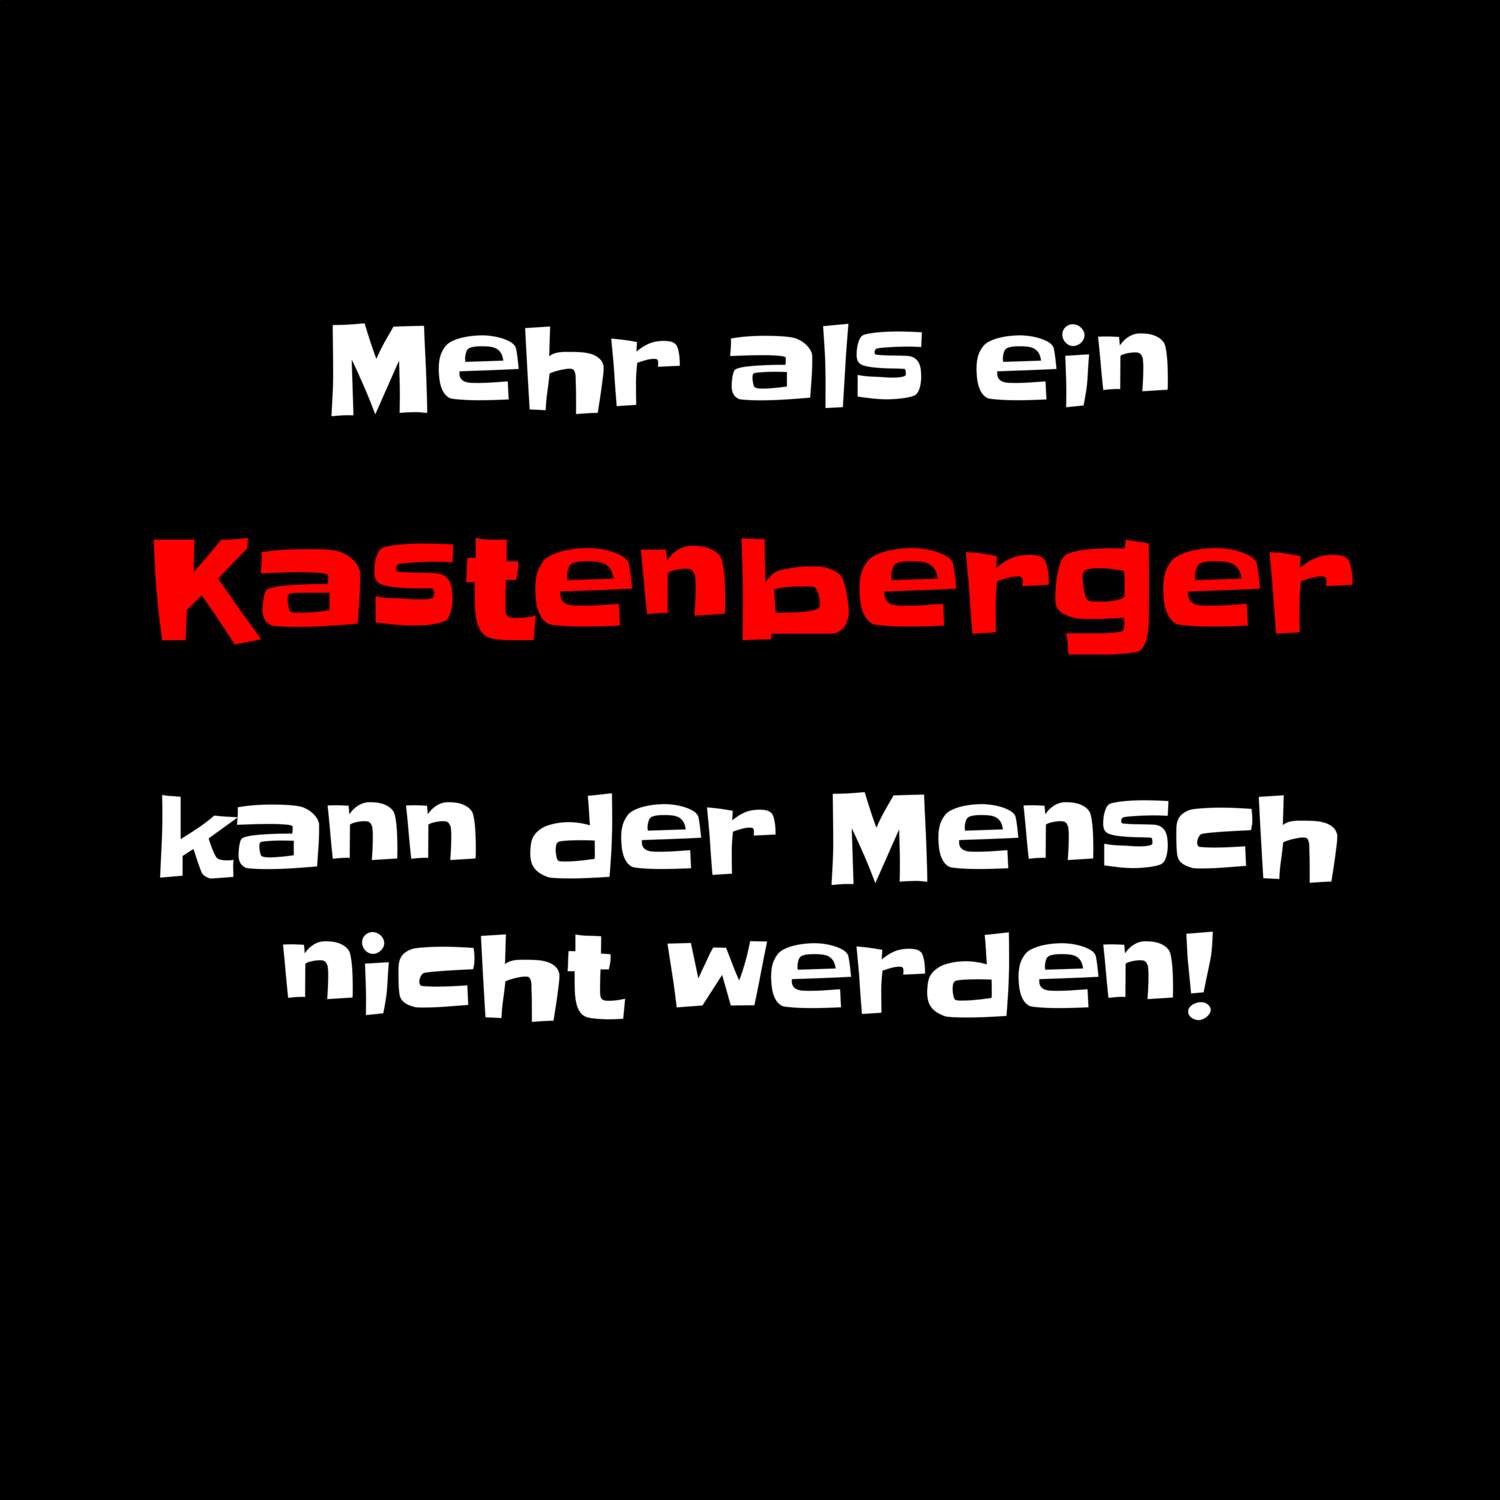 Kastenberg T-Shirt »Mehr als ein«